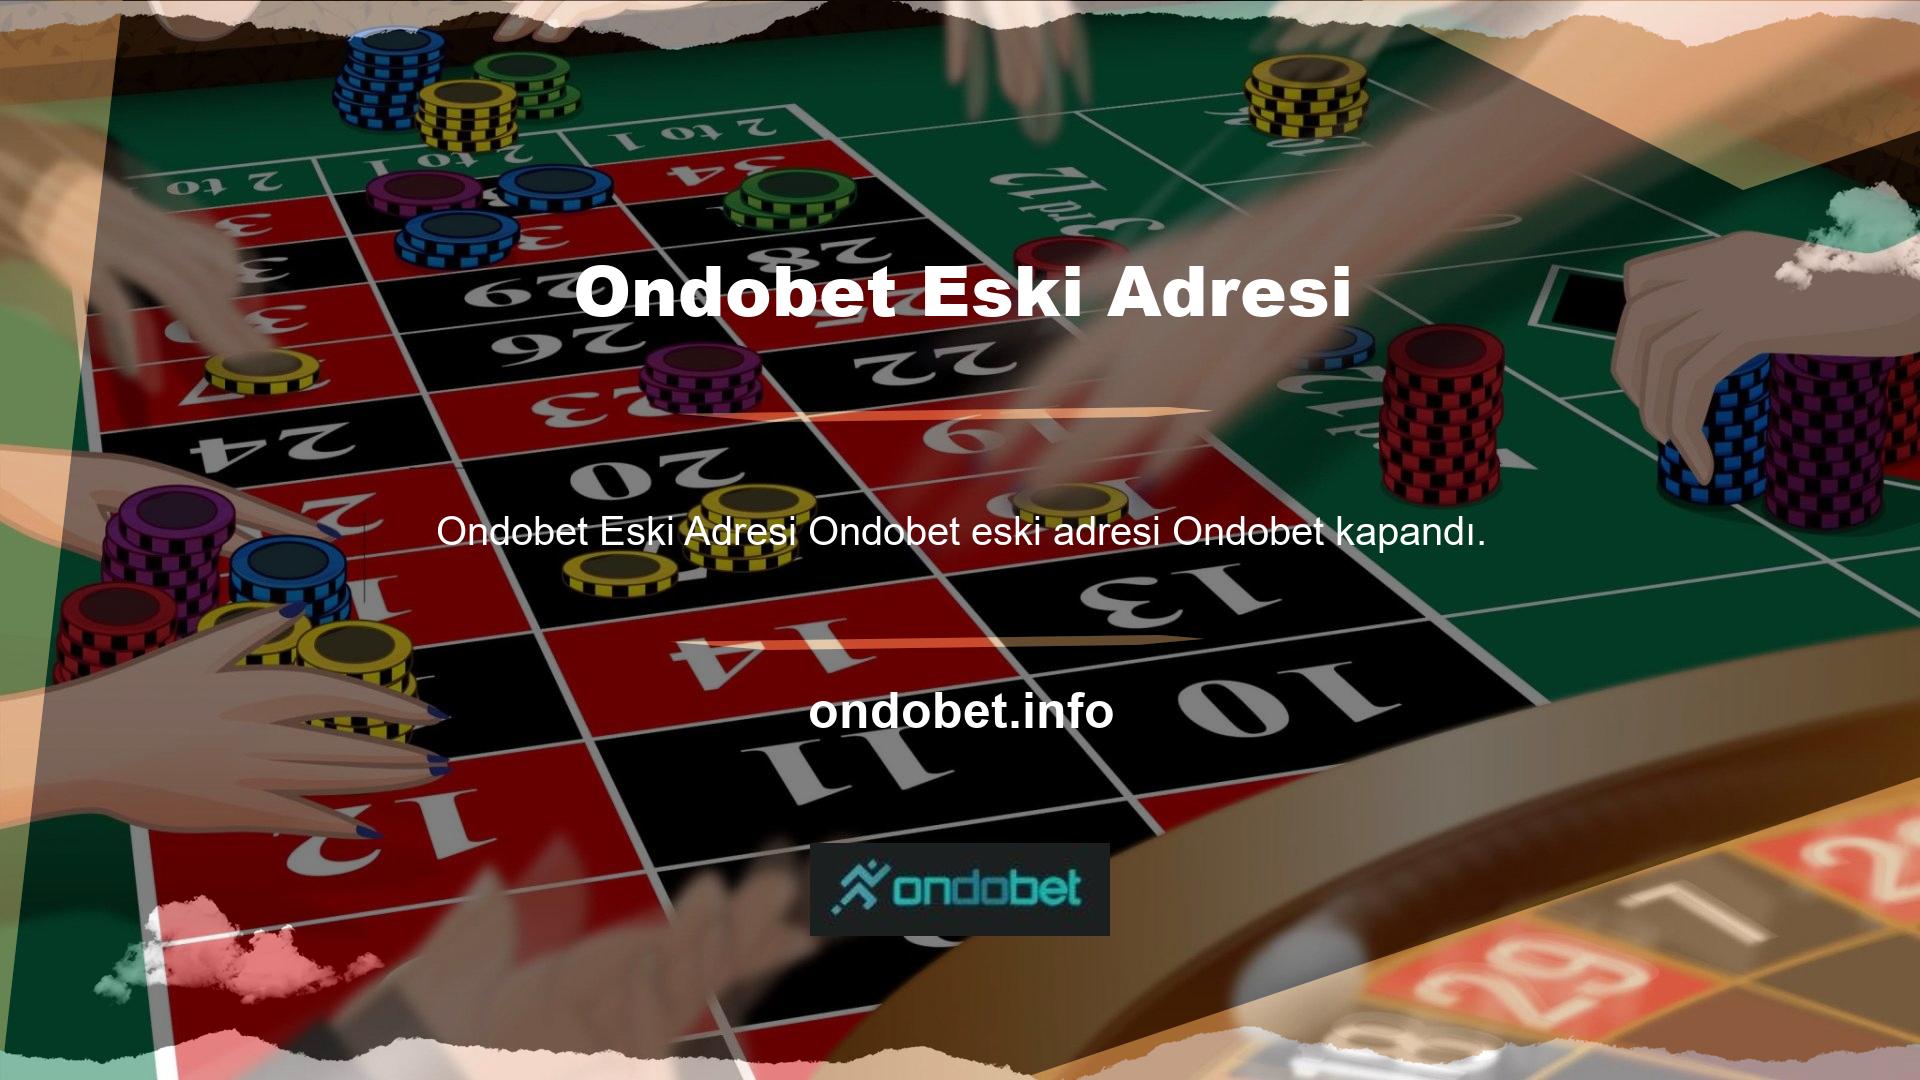 Yeni adresi Ondobet